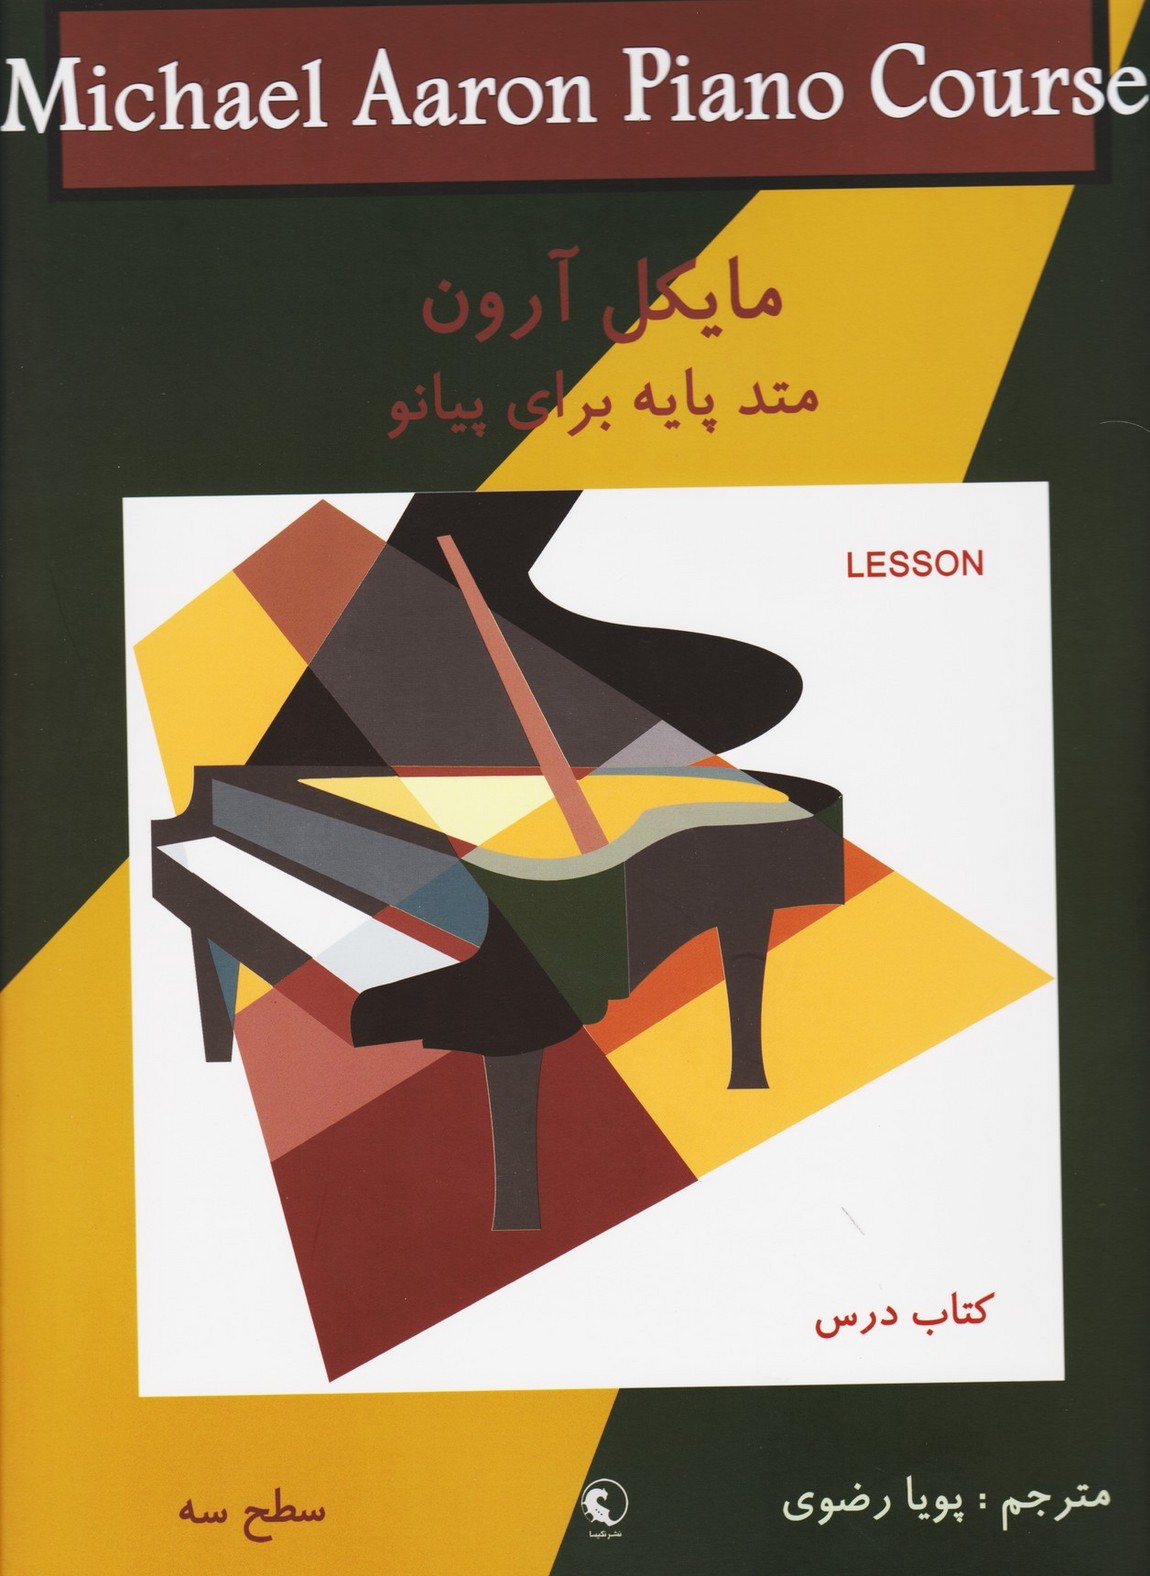 مایکل آرون: کتاب درس . سطح سه/متد پایه برای پیانو